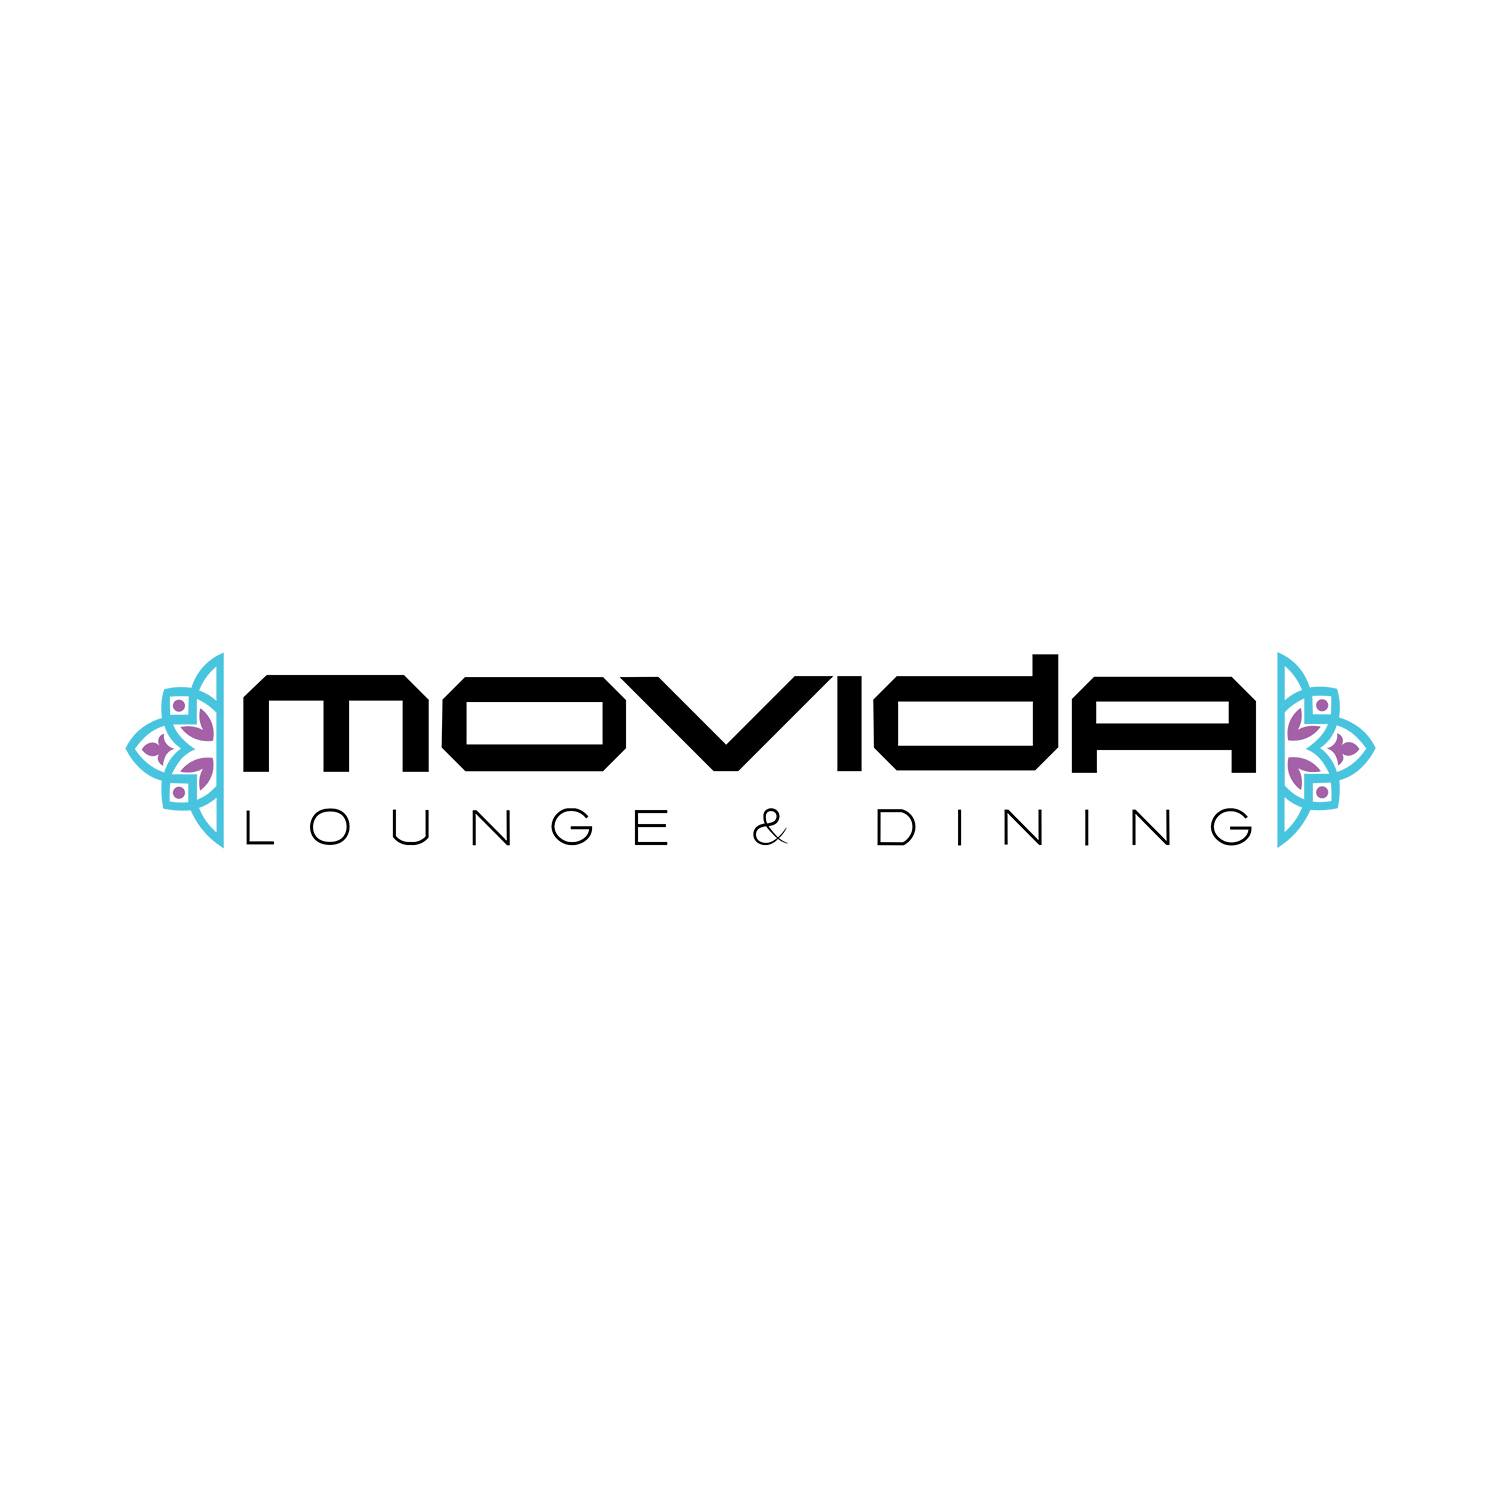 Movida